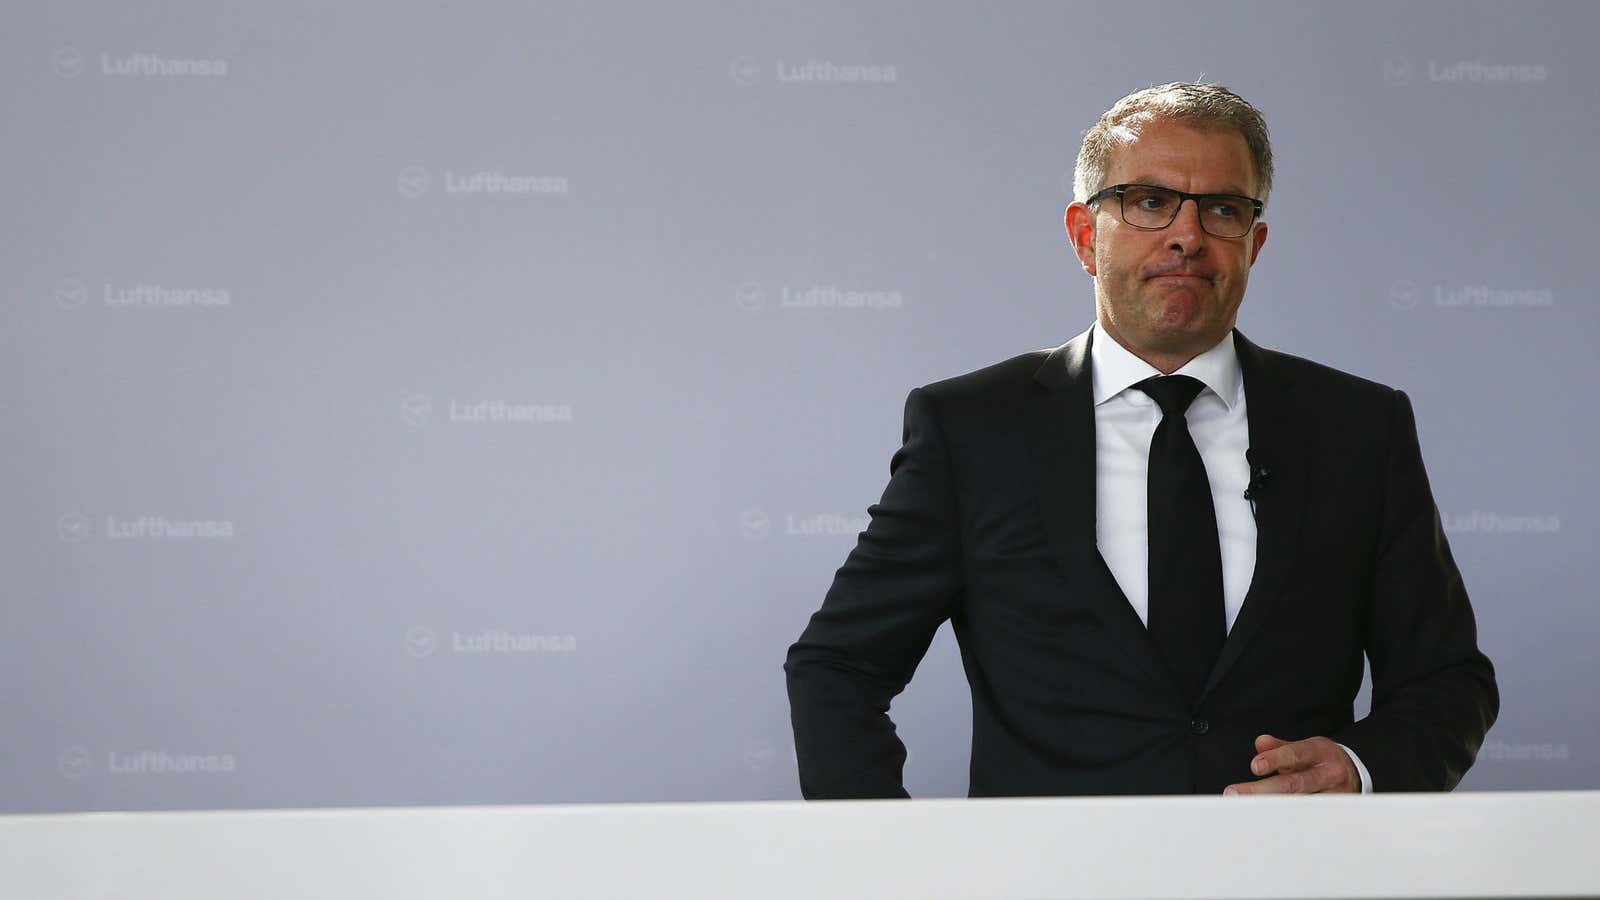 Lufthansa CEO Carsten Spohr.